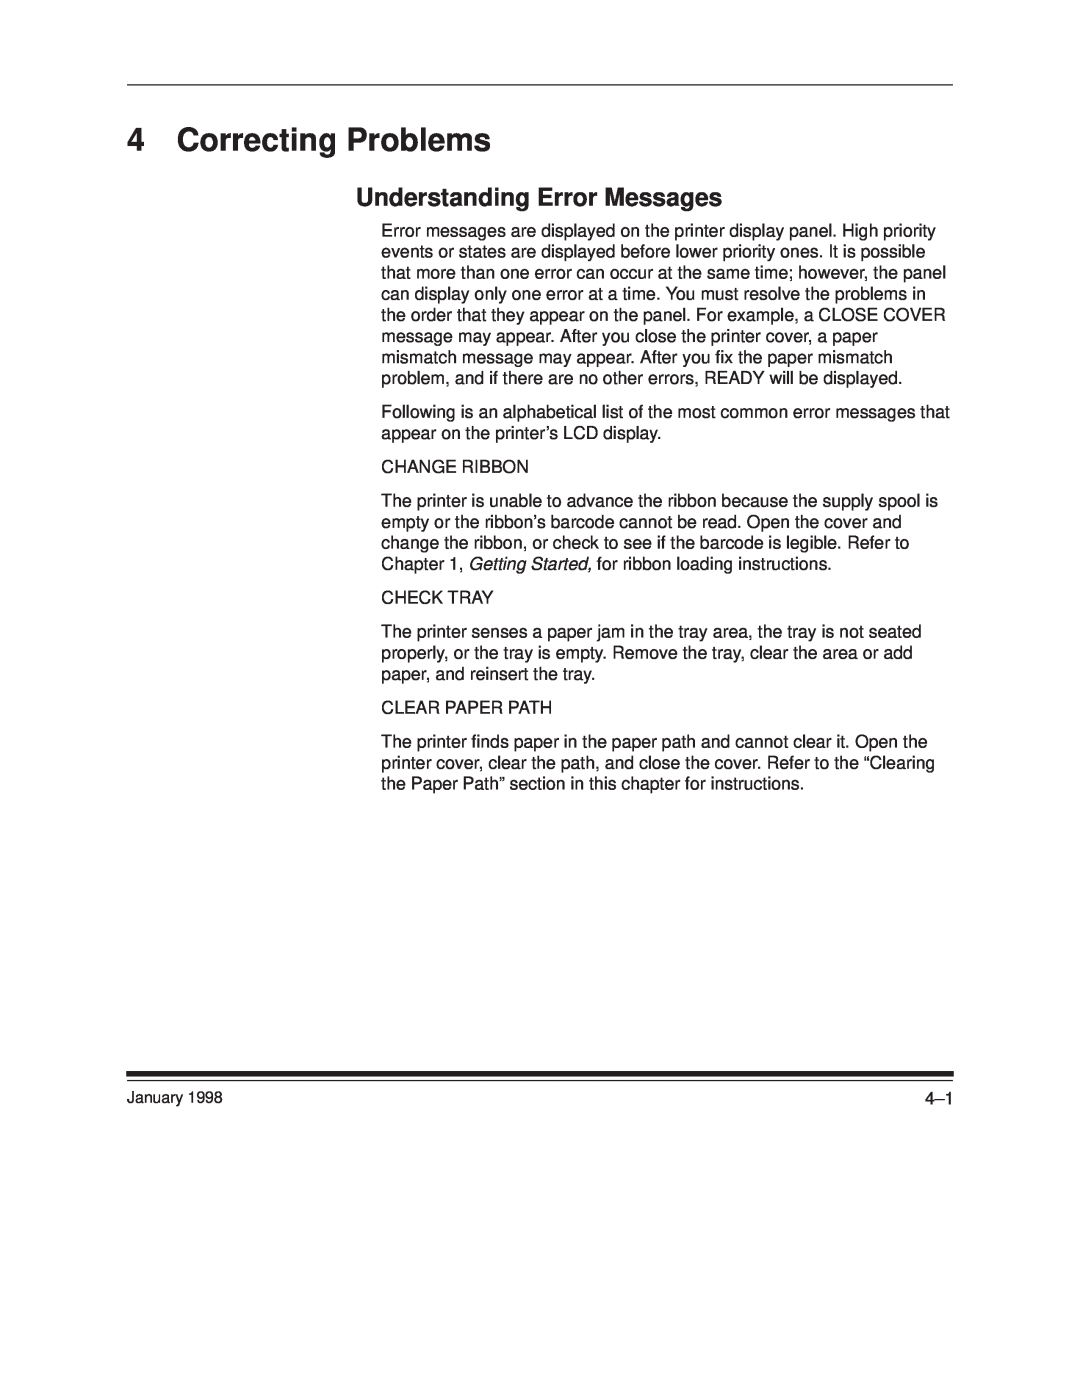 Kodak 8657 manual Correcting Problems, Understanding Error Messages 